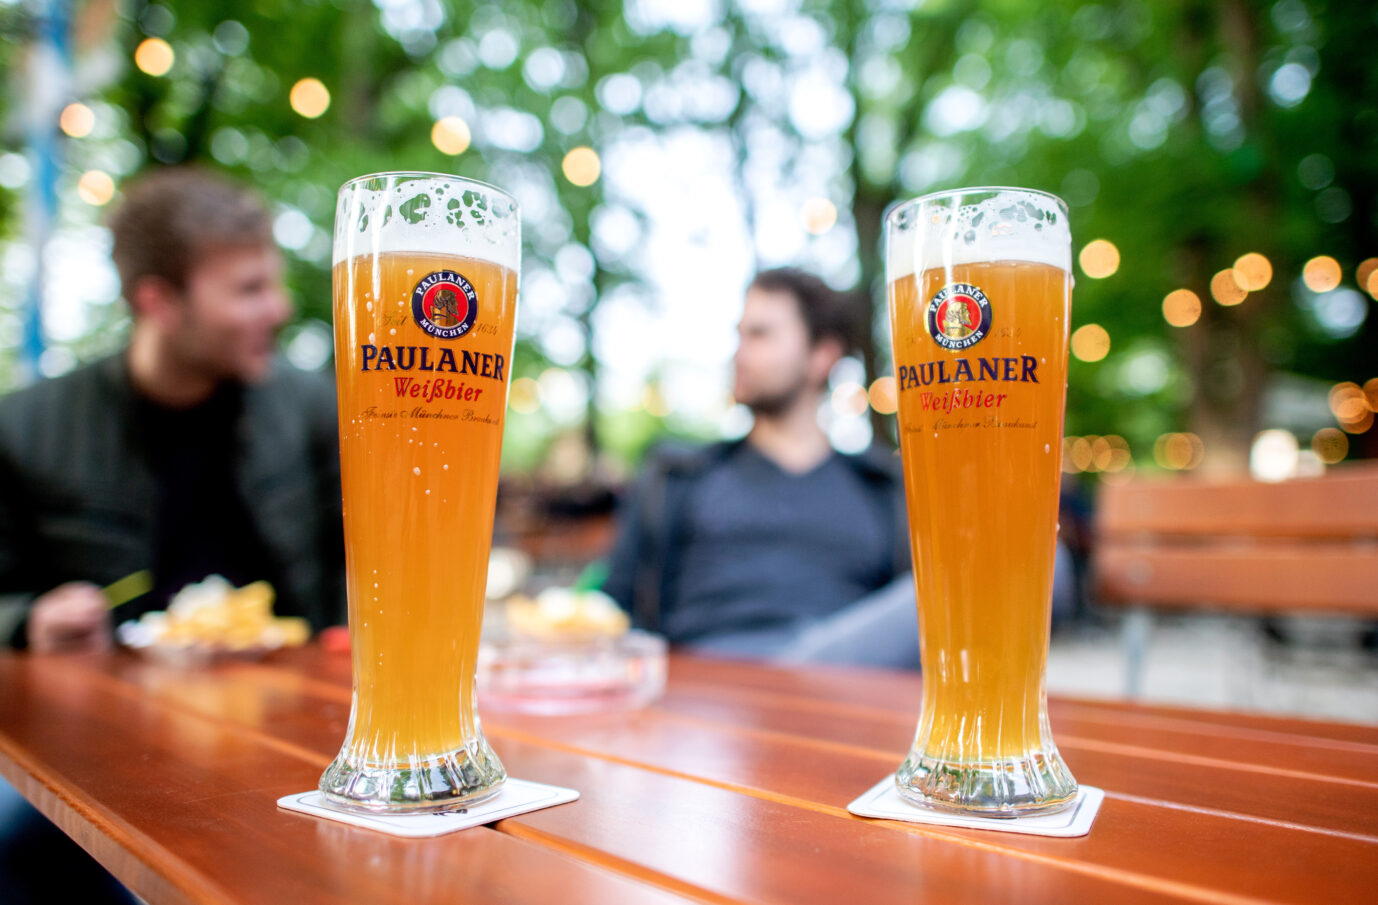 Bei einer Hitzewelle hilft der richtige Safe-Space wie ein Biergarten und ausreichend trinken.